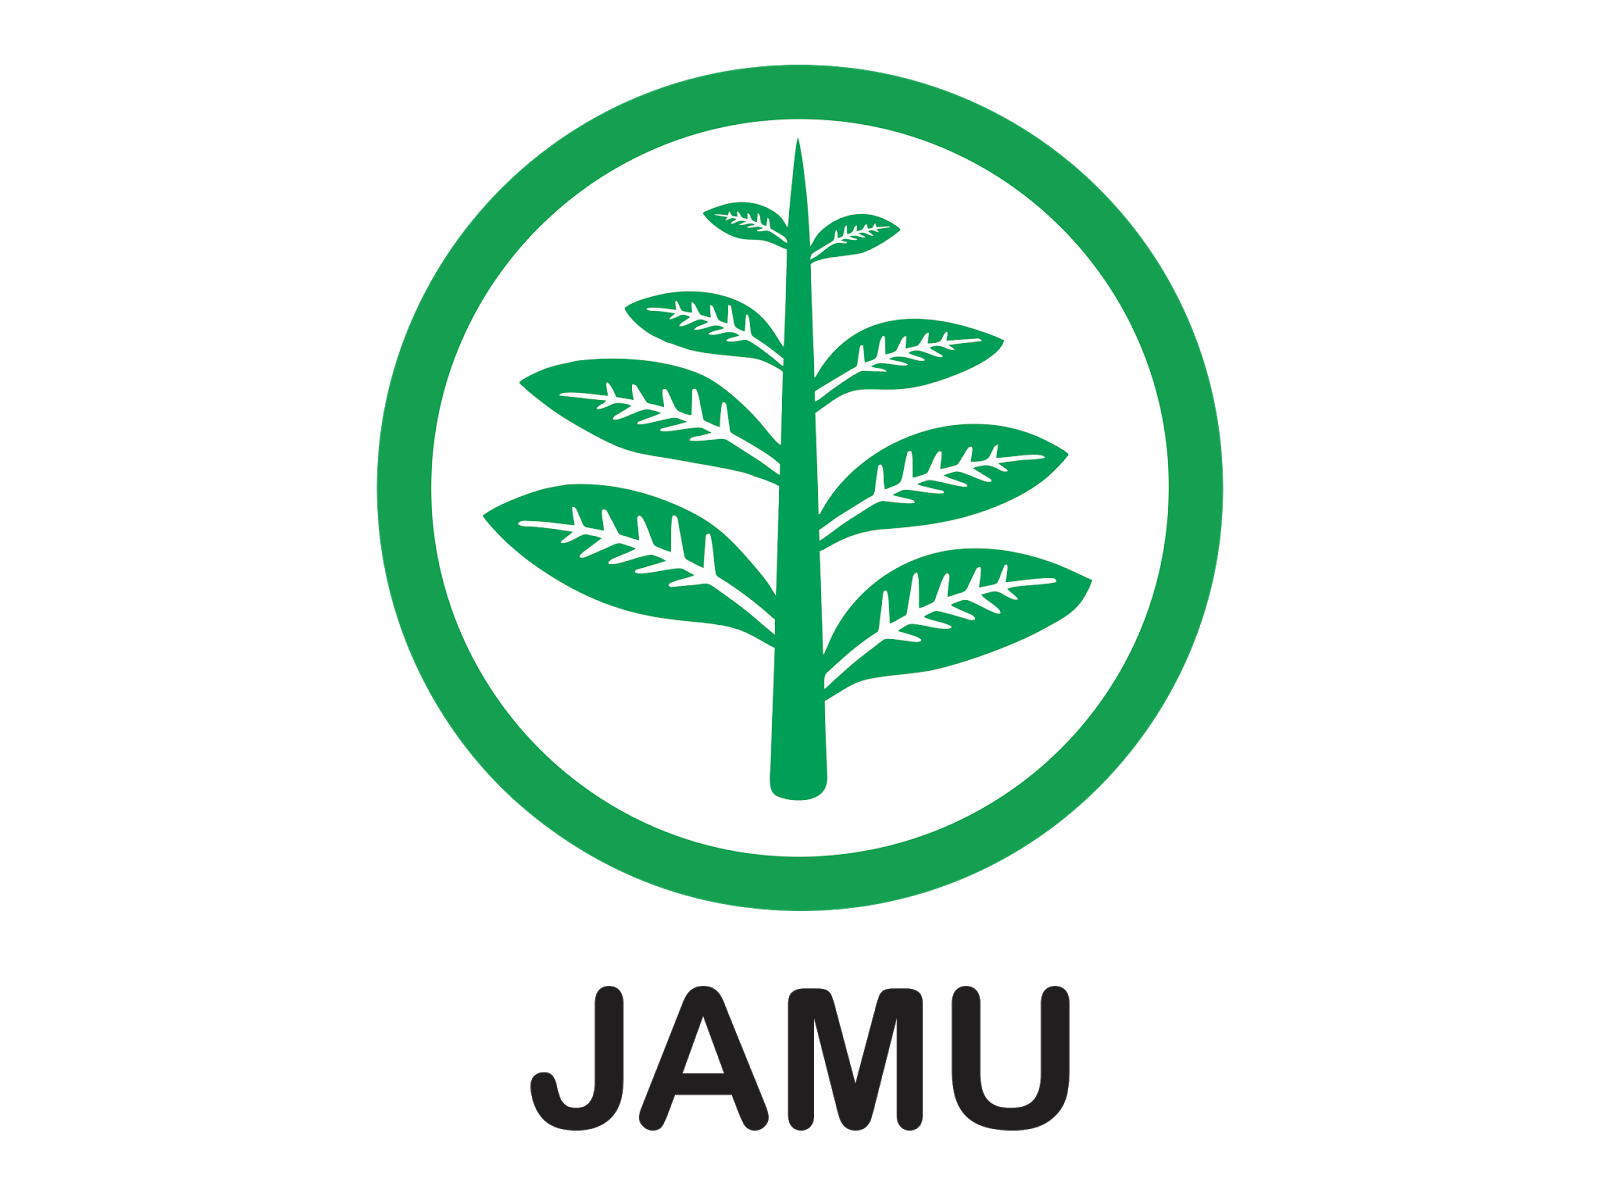 Logo Jamu Format CDR dan PNG GUDRIL LOGO Tempat nya 